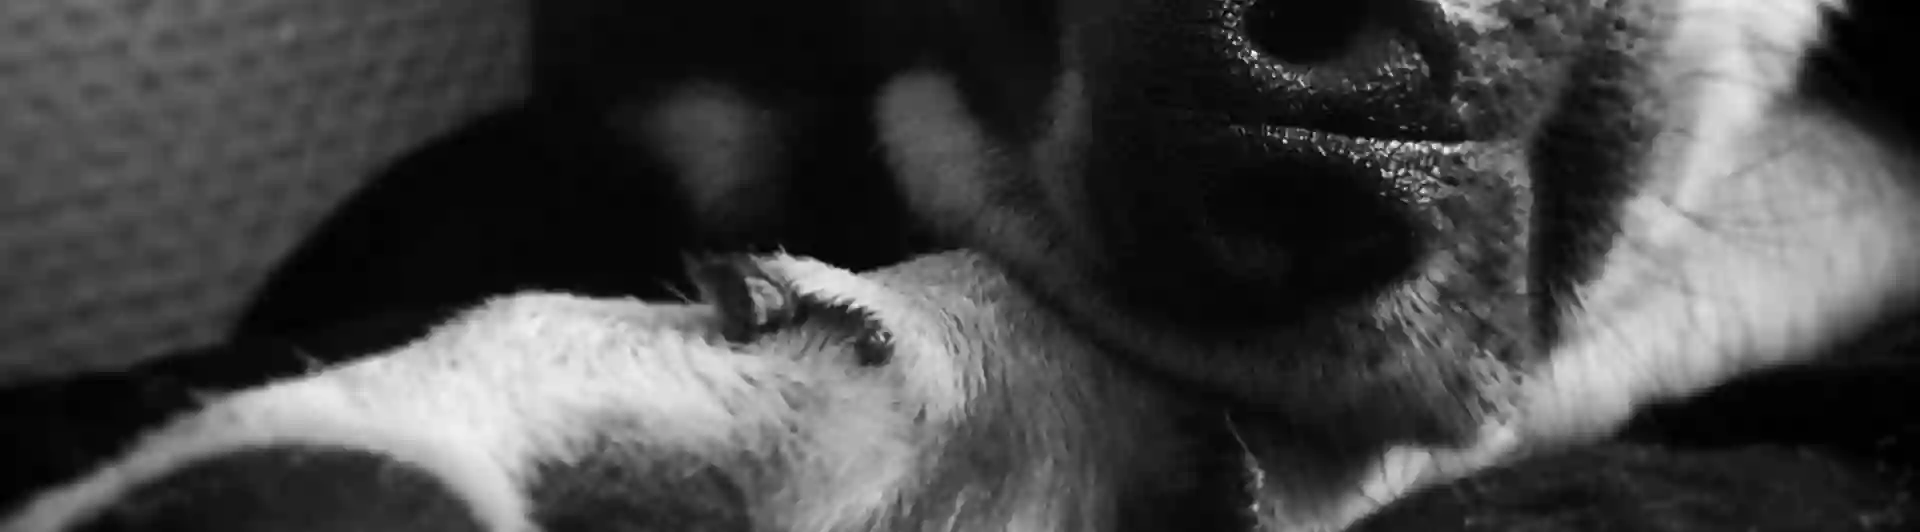 Sovande hund i svartvitt 